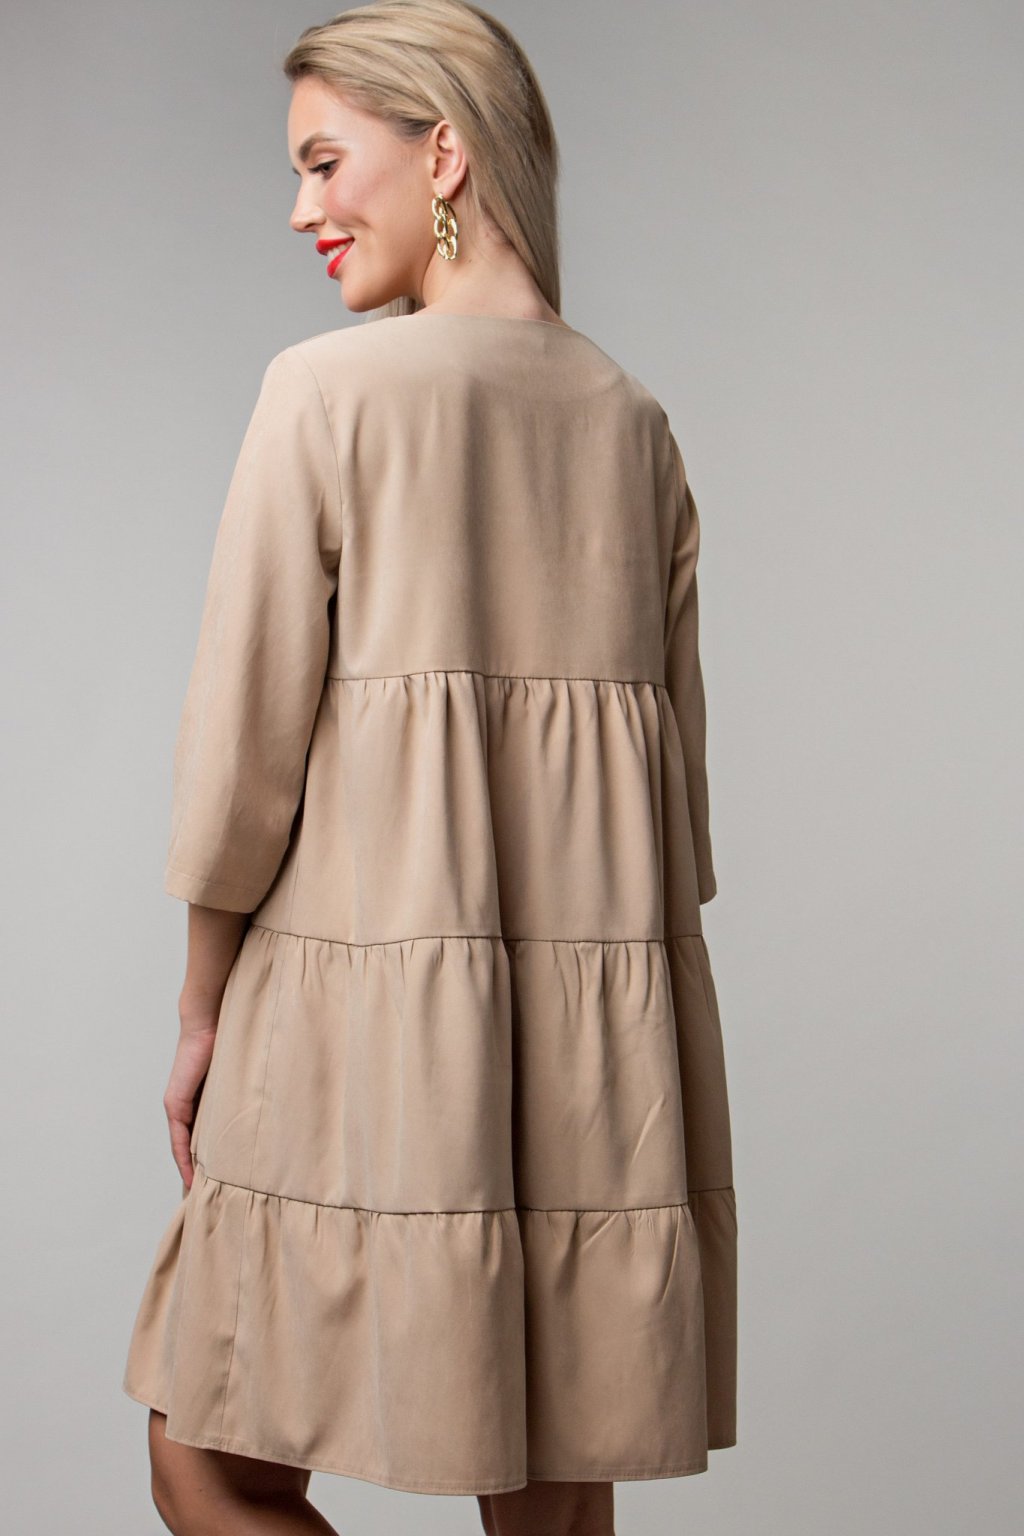 Платье Беверли цвет беж (П-234-2) - 5